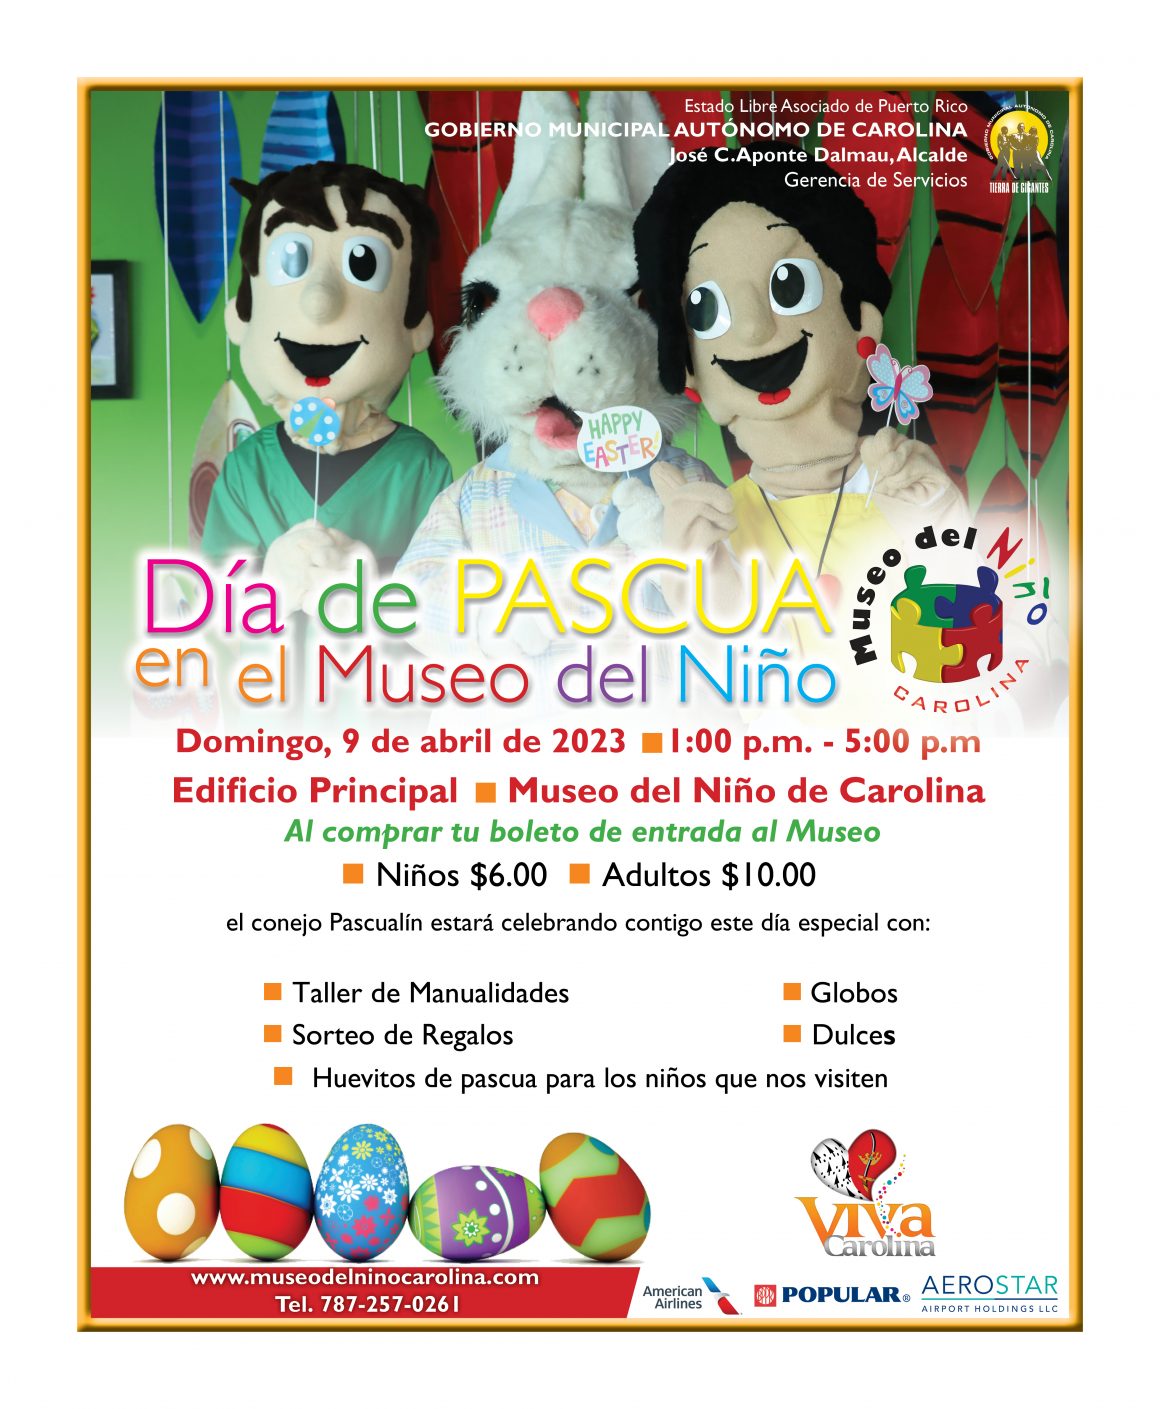 Día de Pascua en el Museo del Niño